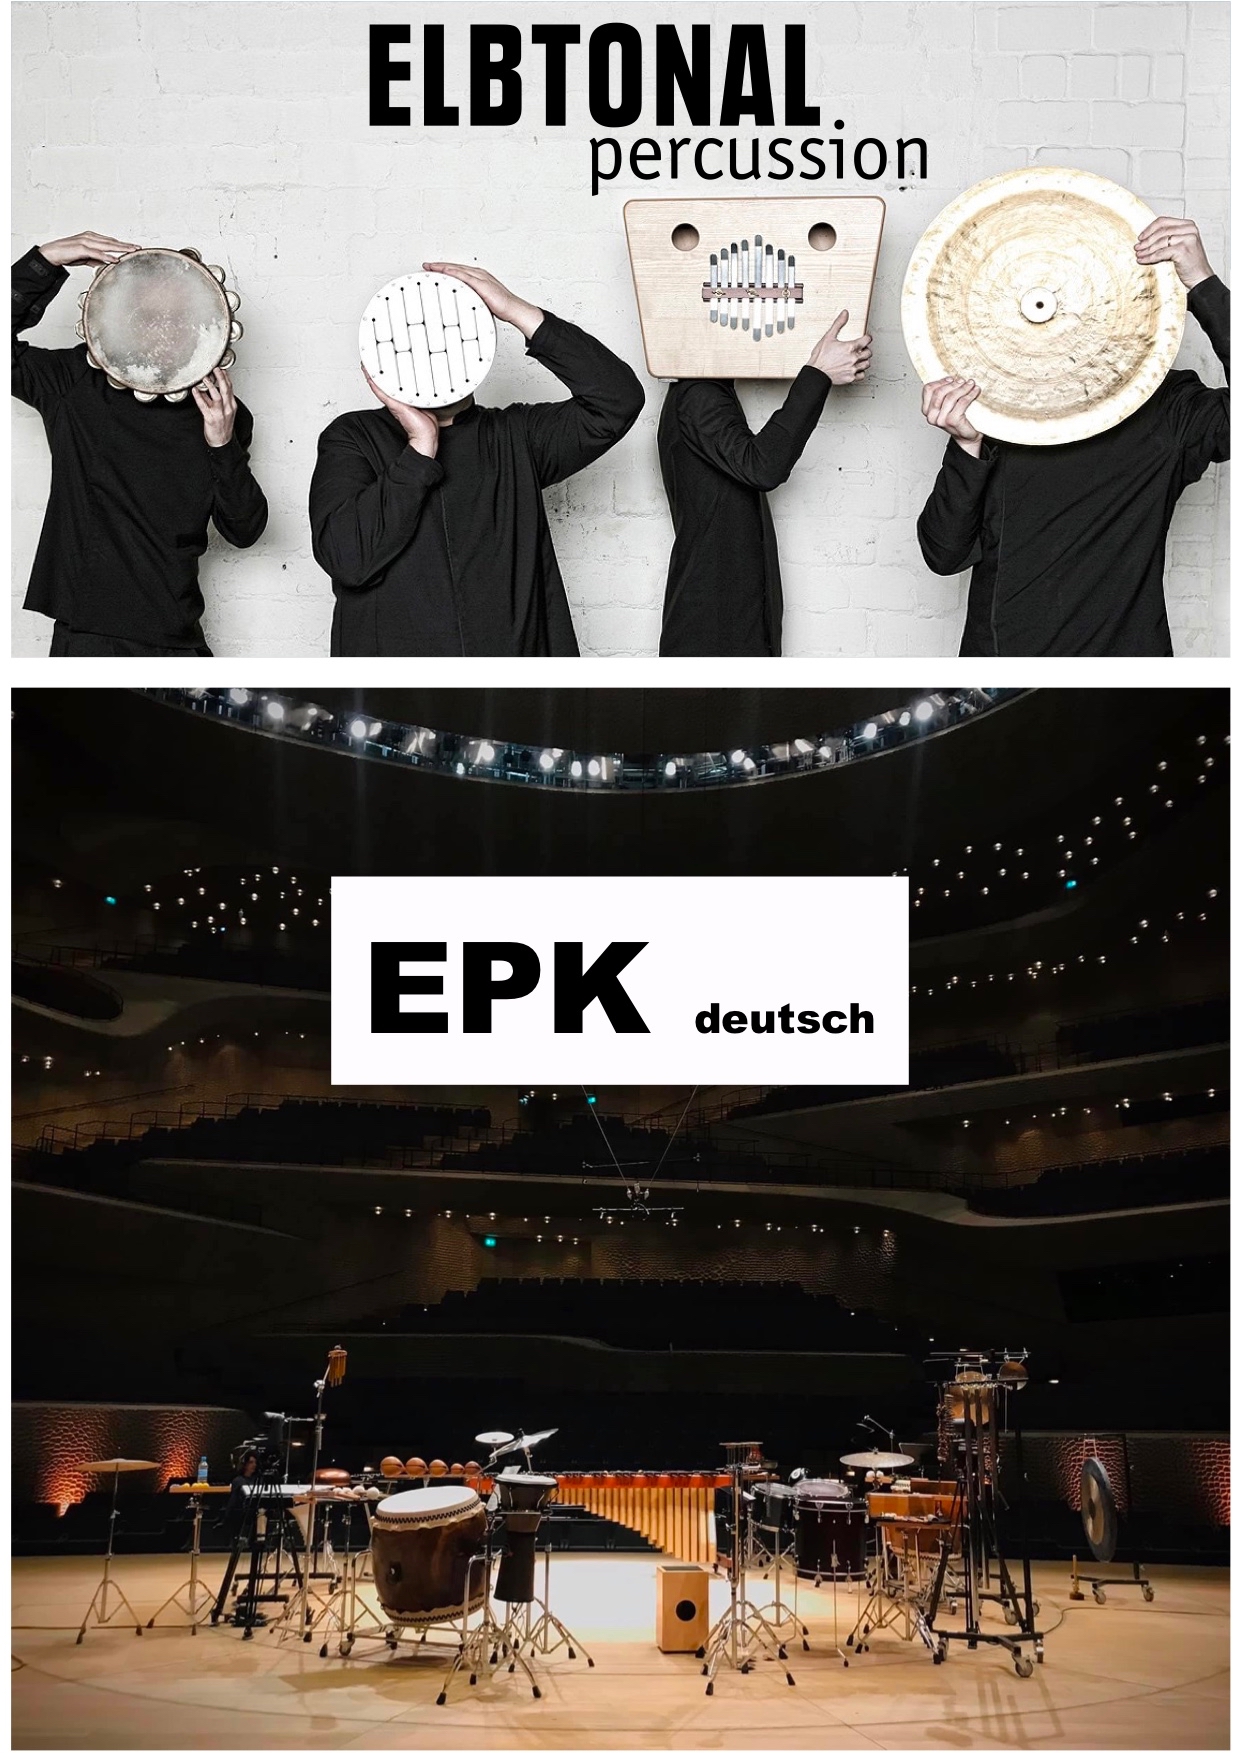 EPK Deutsch